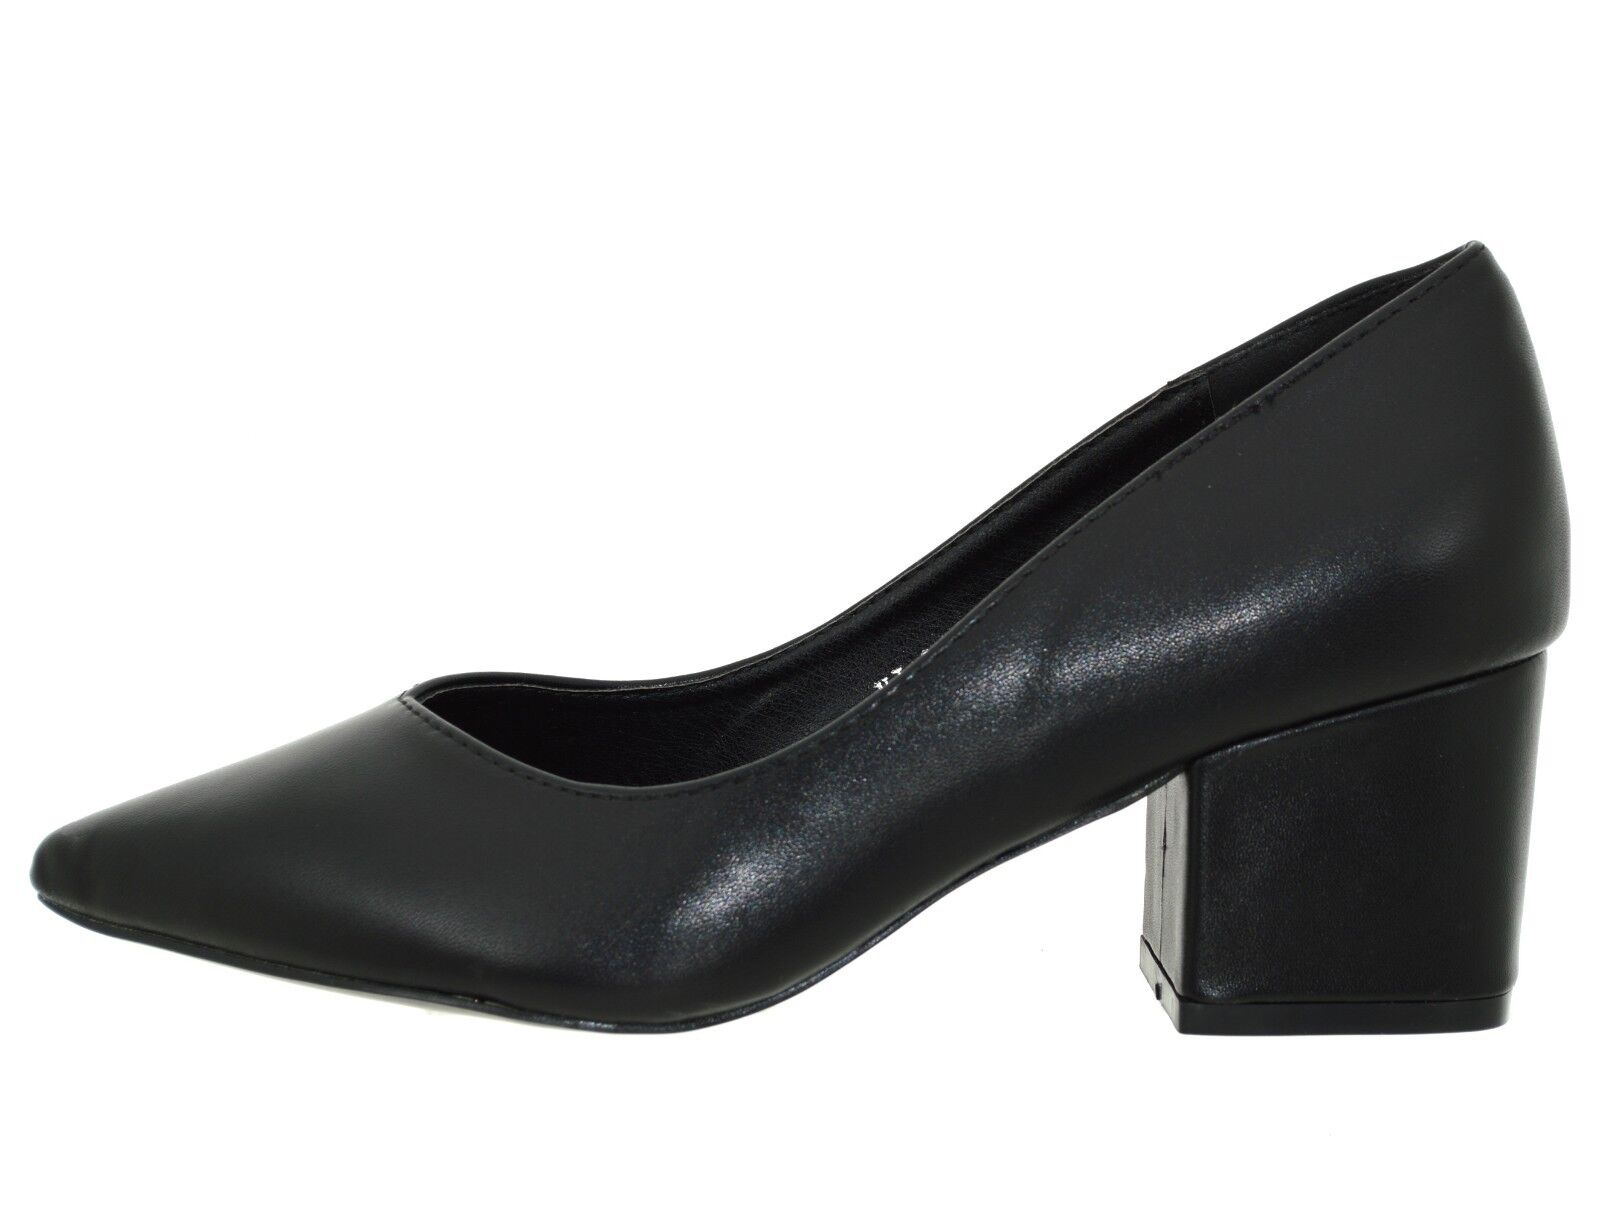 Scarpe donna Decolletè nere tacco basso decolte eleganti a punta senza  plateau | eBay